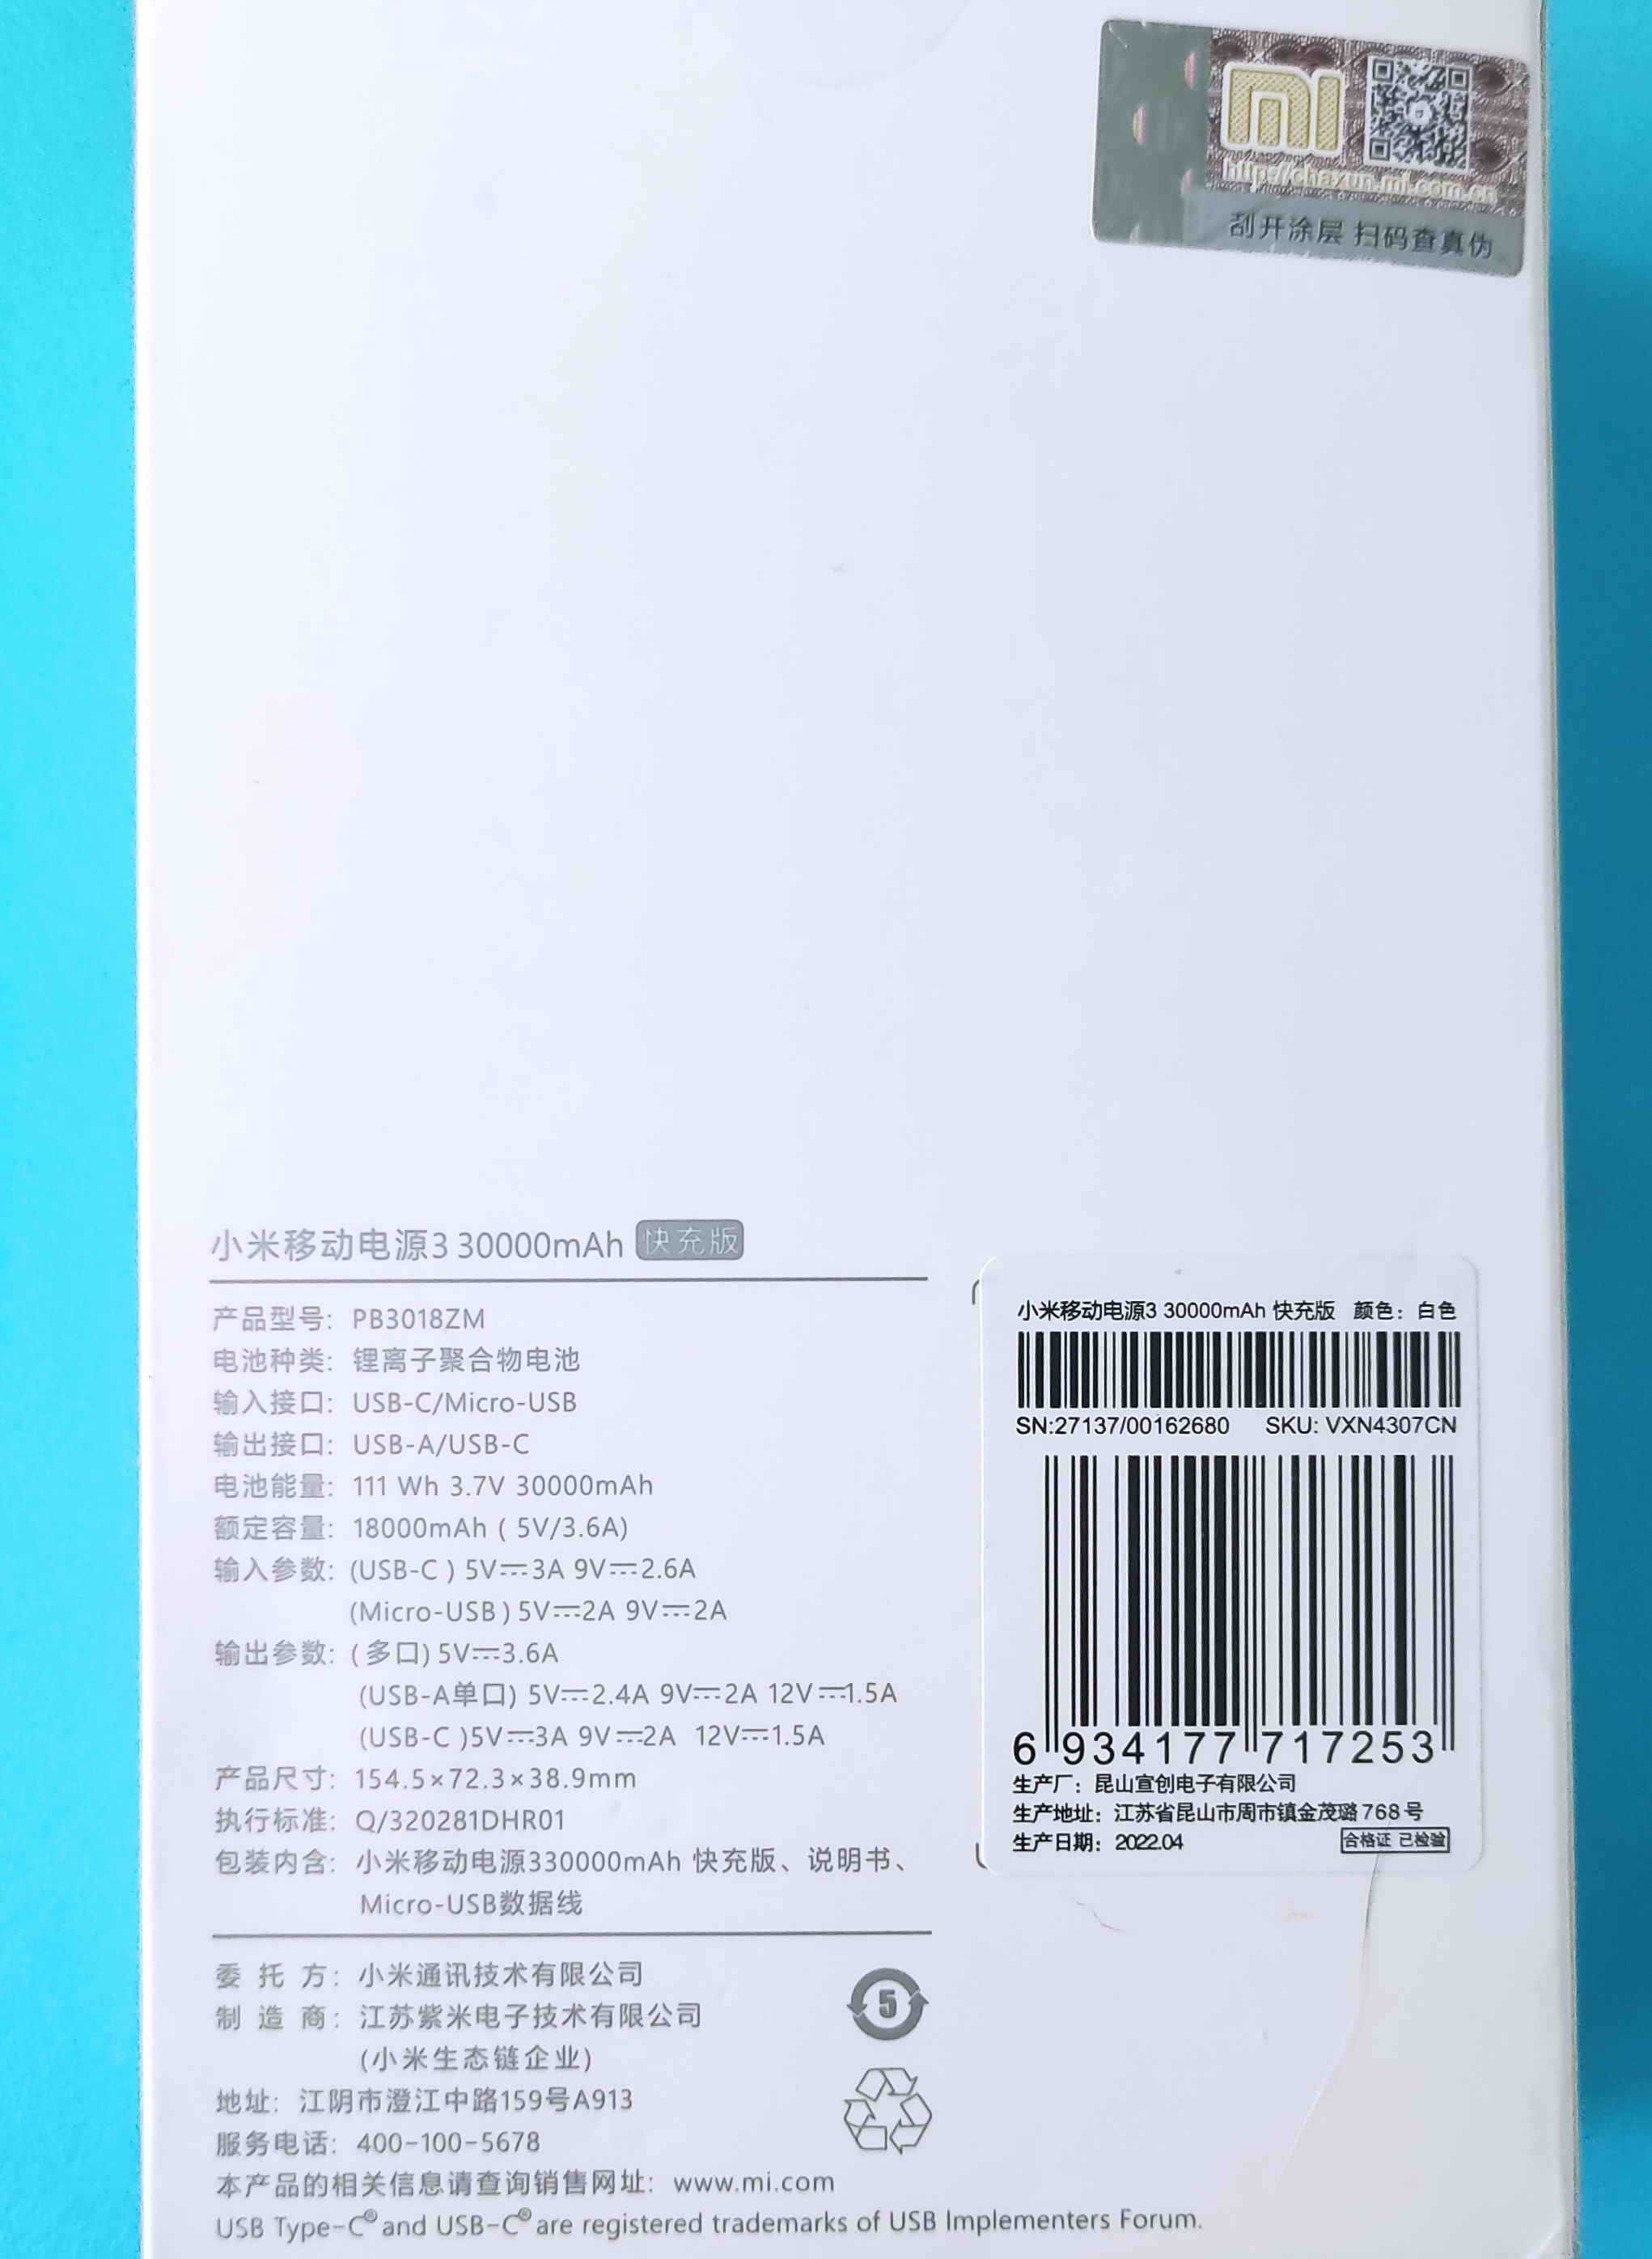 Повербанк Xiaomi  30000 mAh, 18 Вт. Quick сharge. White